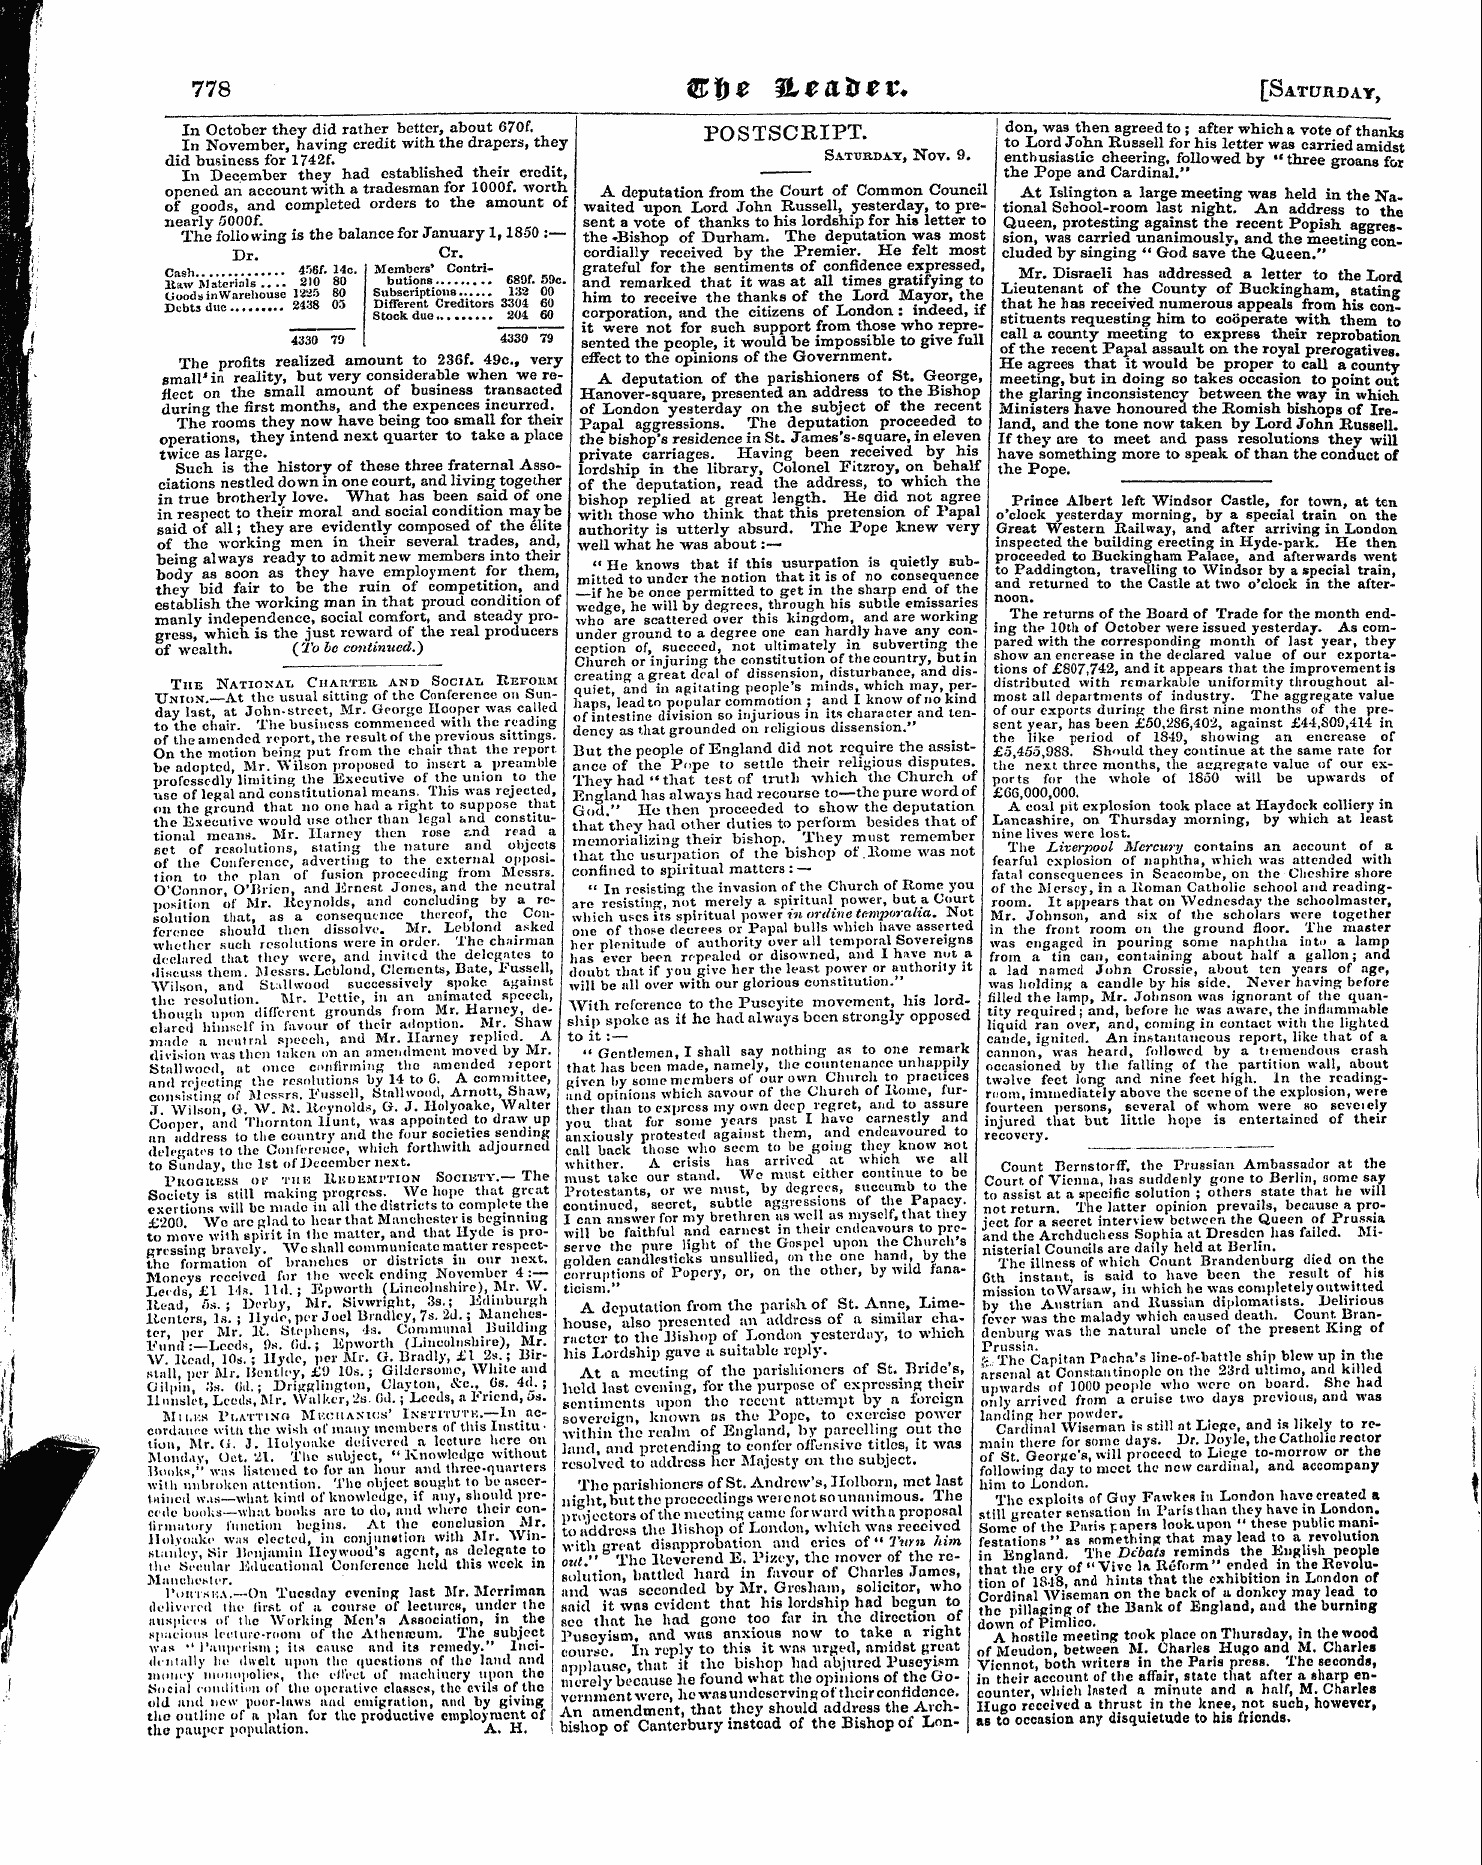 Leader (1850-1860): jS F Y, Town edition - Postscript. Saturday, Nov. 9